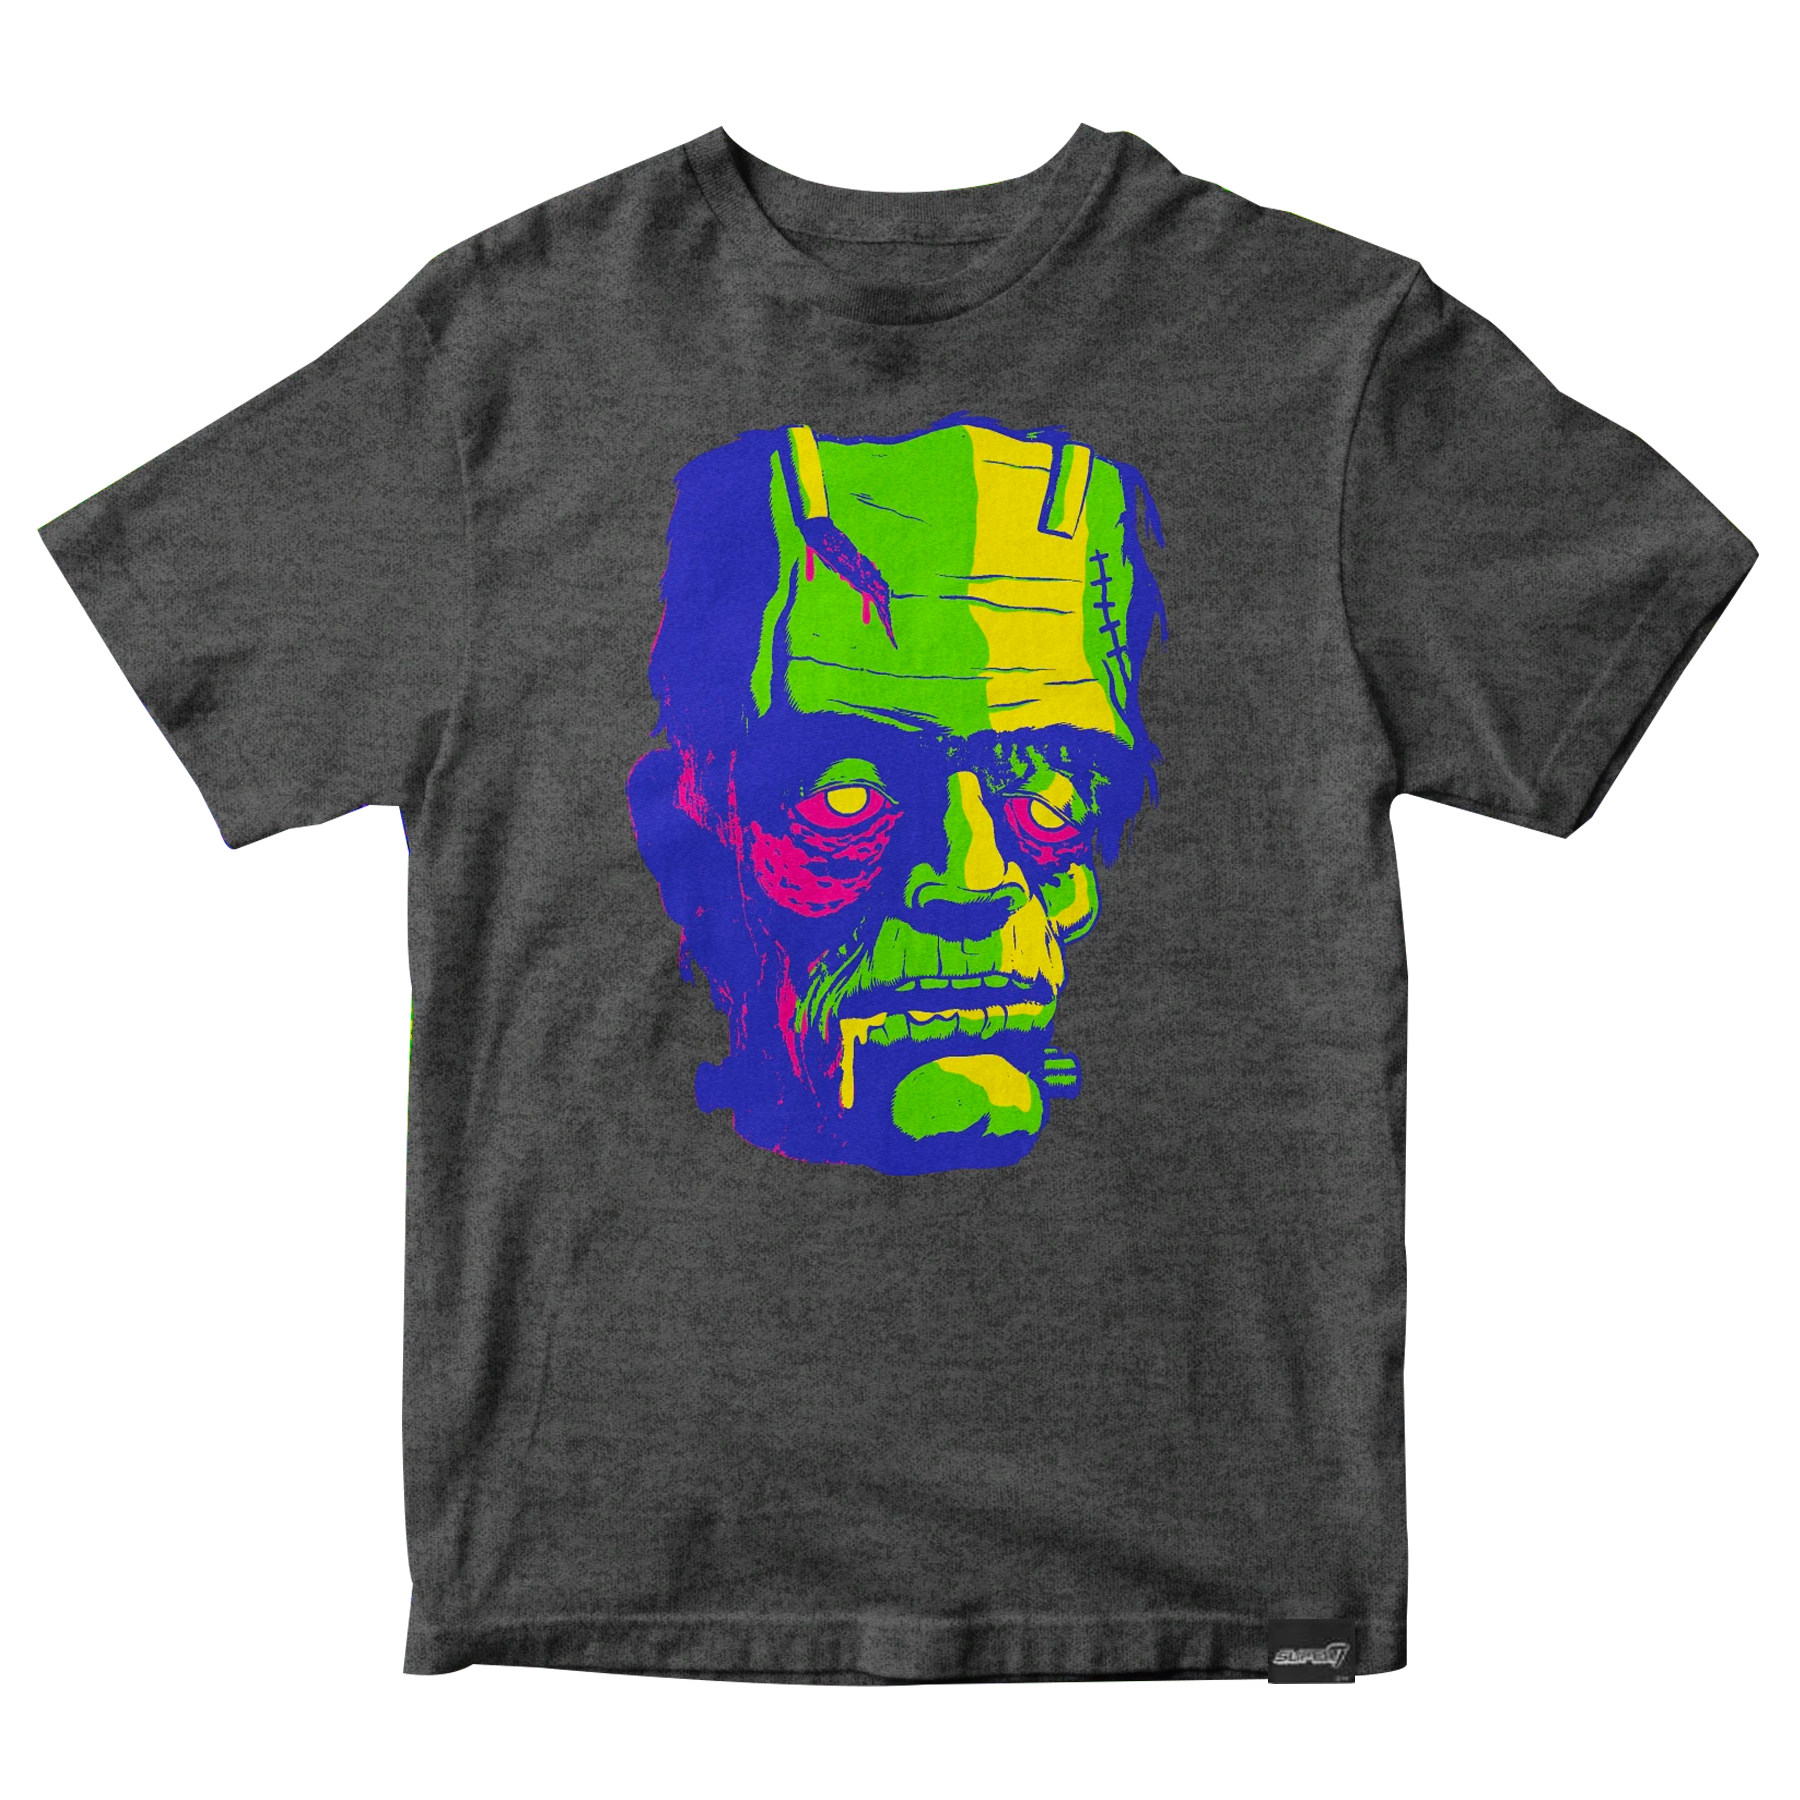 Universal Monsters T-shirt - Gross Frank